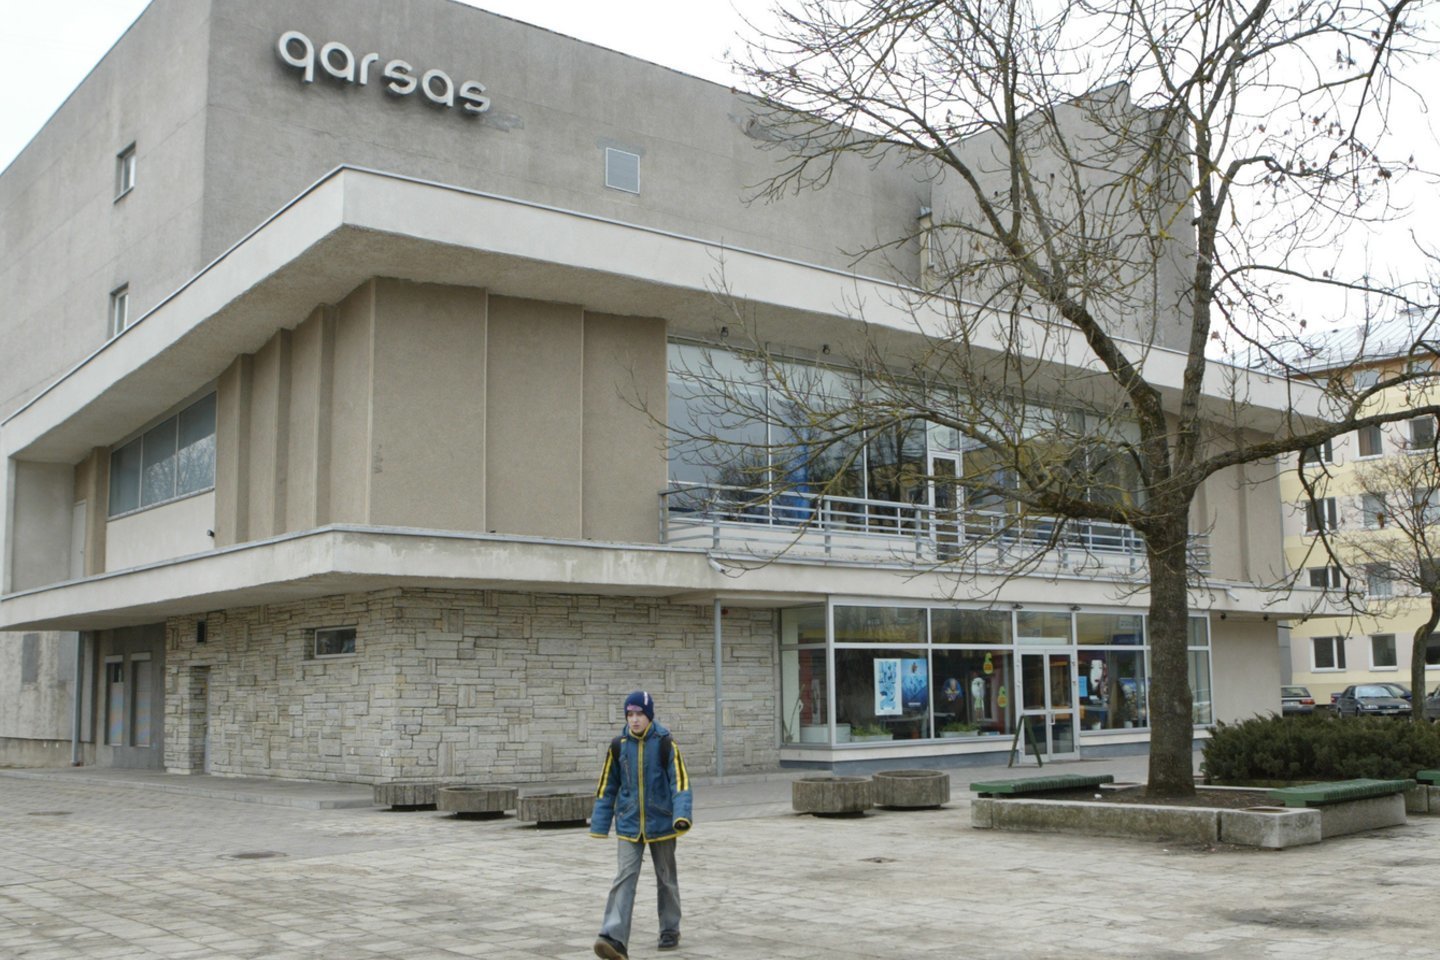 Senasis Panevėžio kino teatras „Garsas“ bus nugriautas.<br> T.Stasevičiaus nuotr.